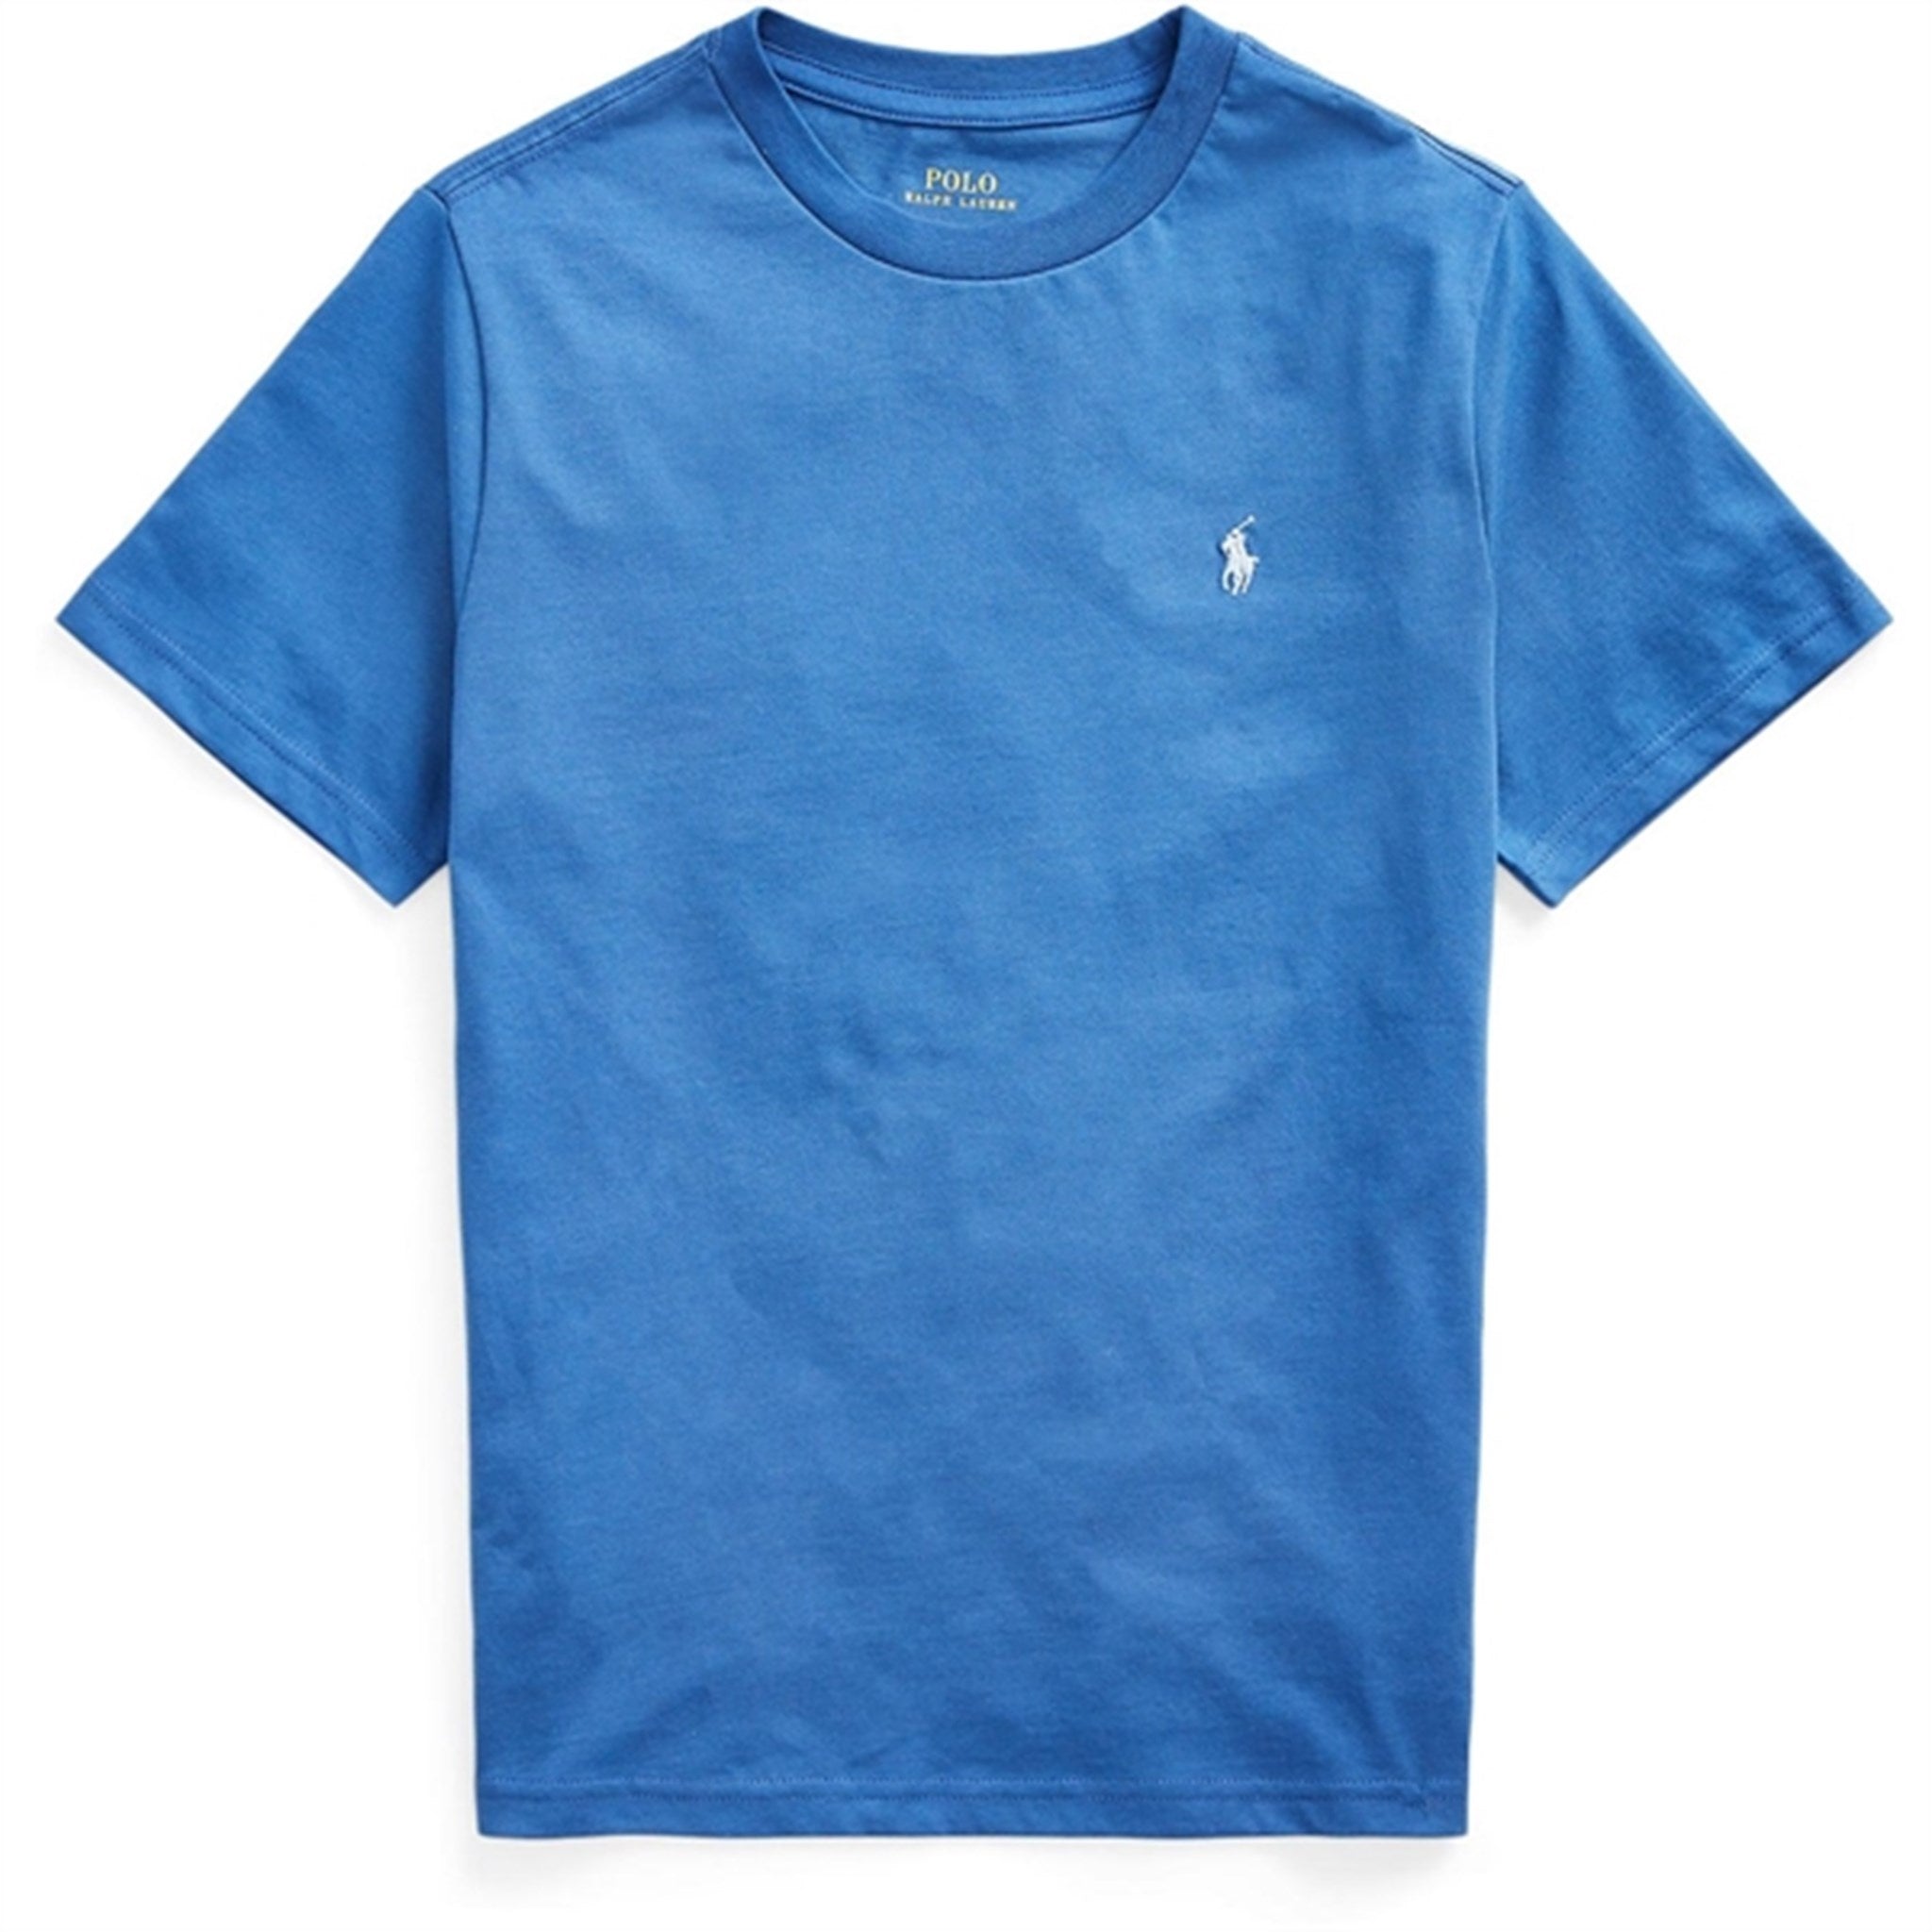 Polo Ralph Lauren Boys T-Shirt Liberty Blue